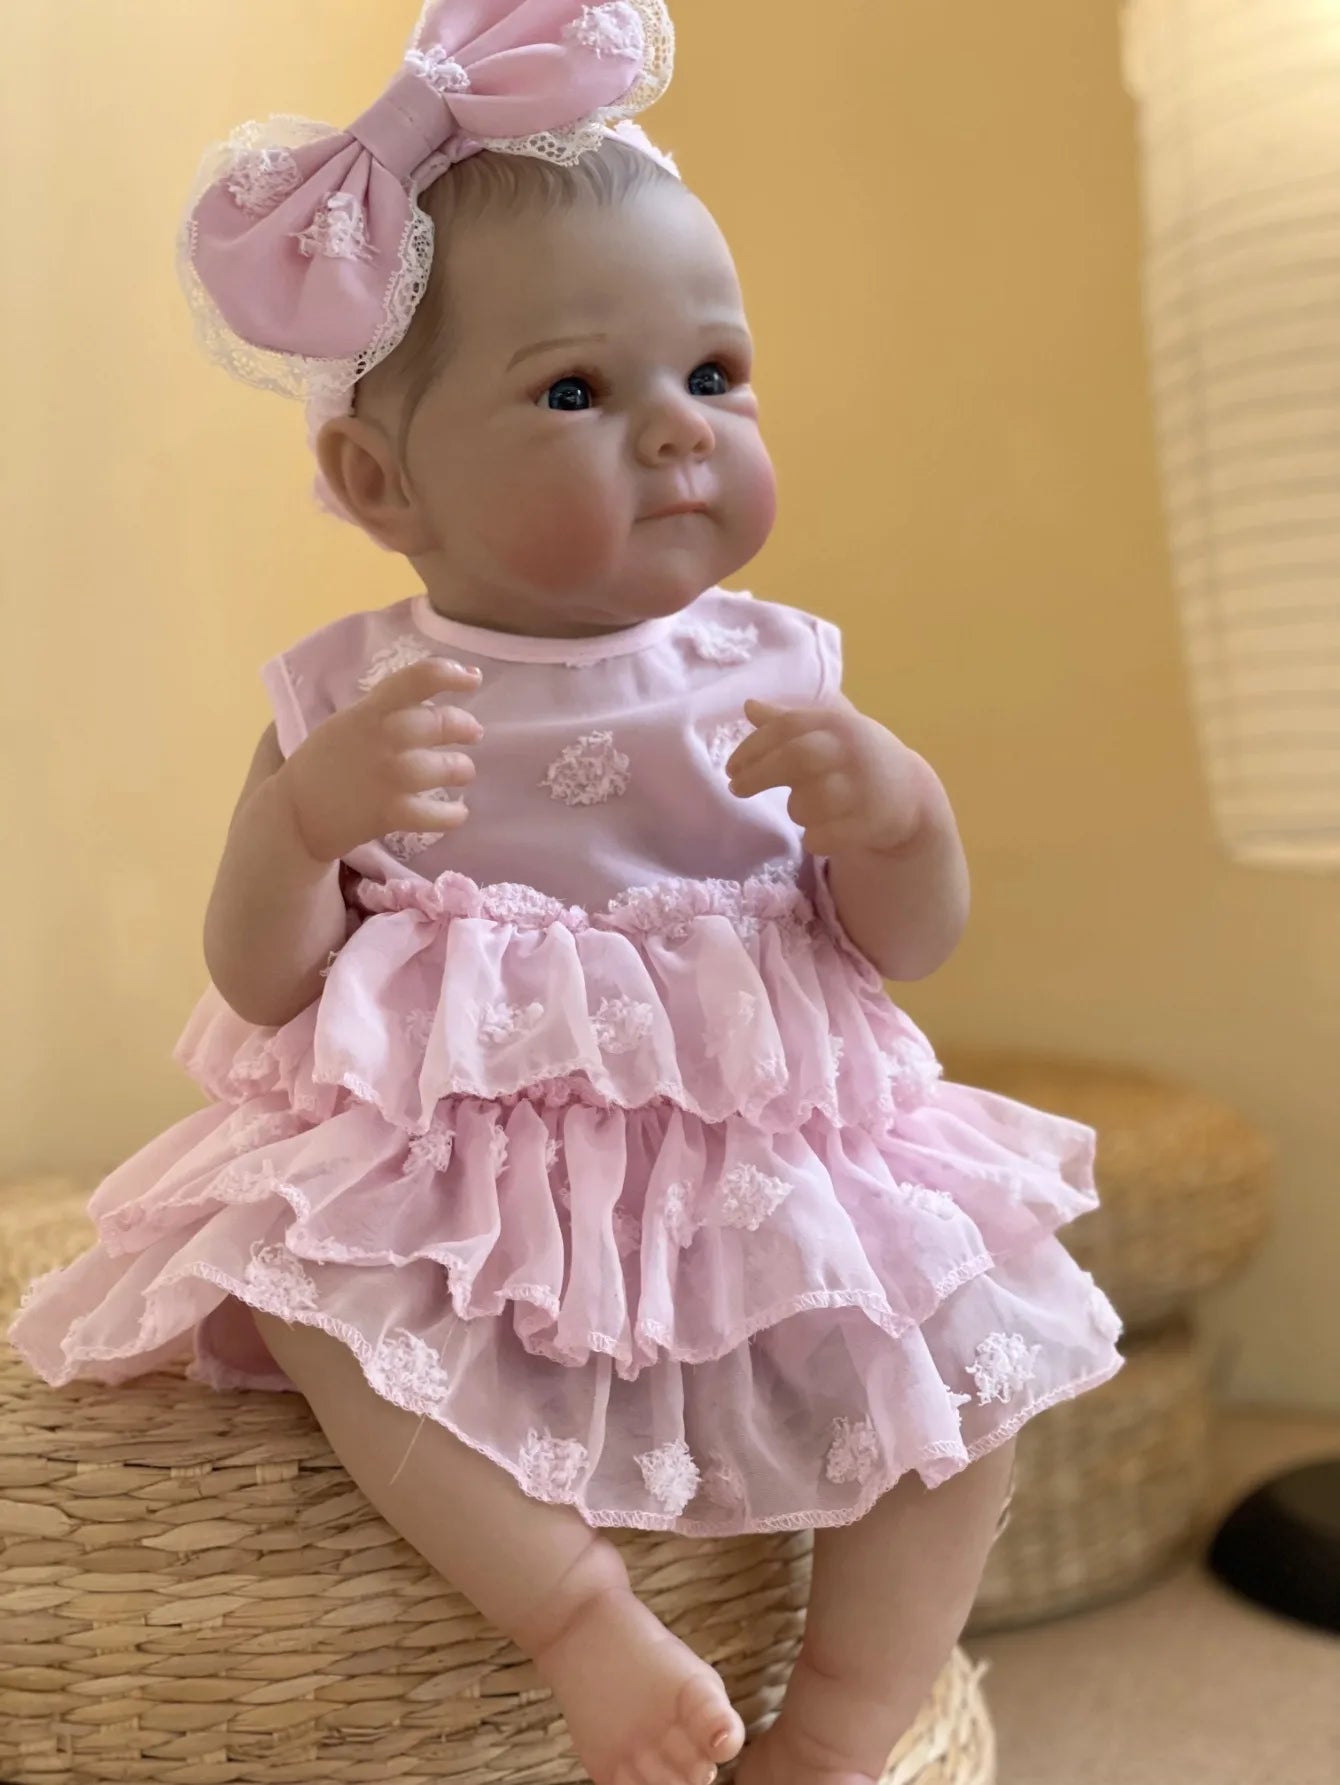 18" Bettie Bebe Reborn Doll - Lifelike Soft Vinyl Baby Toy for Girls' Gift